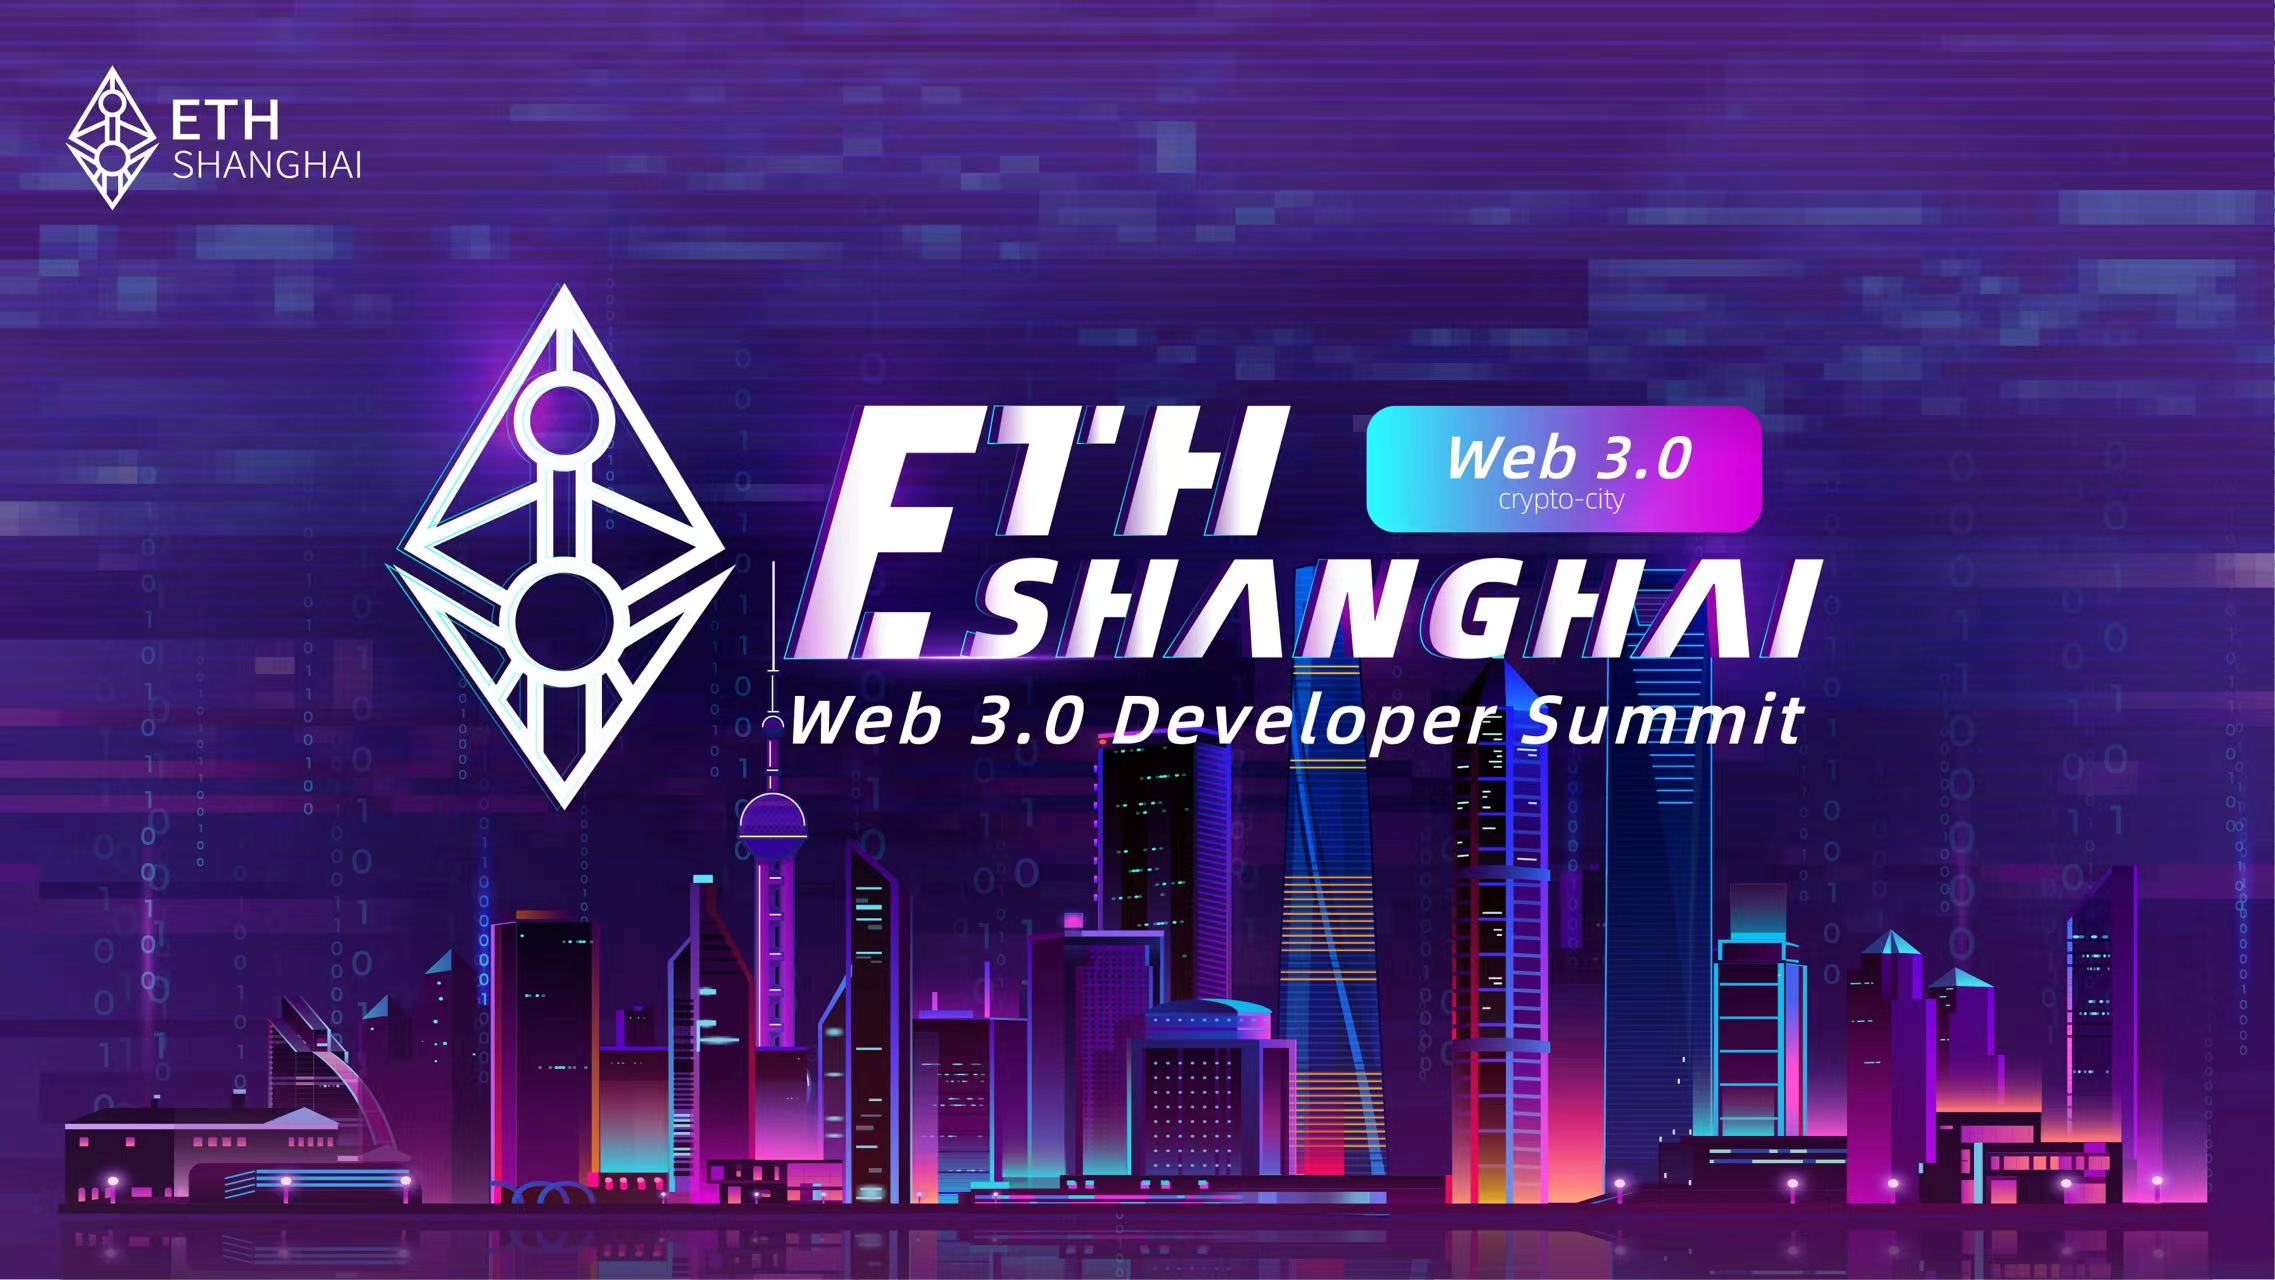 以太坊上海Web 3.0开发者峰会召开在即，“下一代互联网”共创未来将于此启航1.jpg